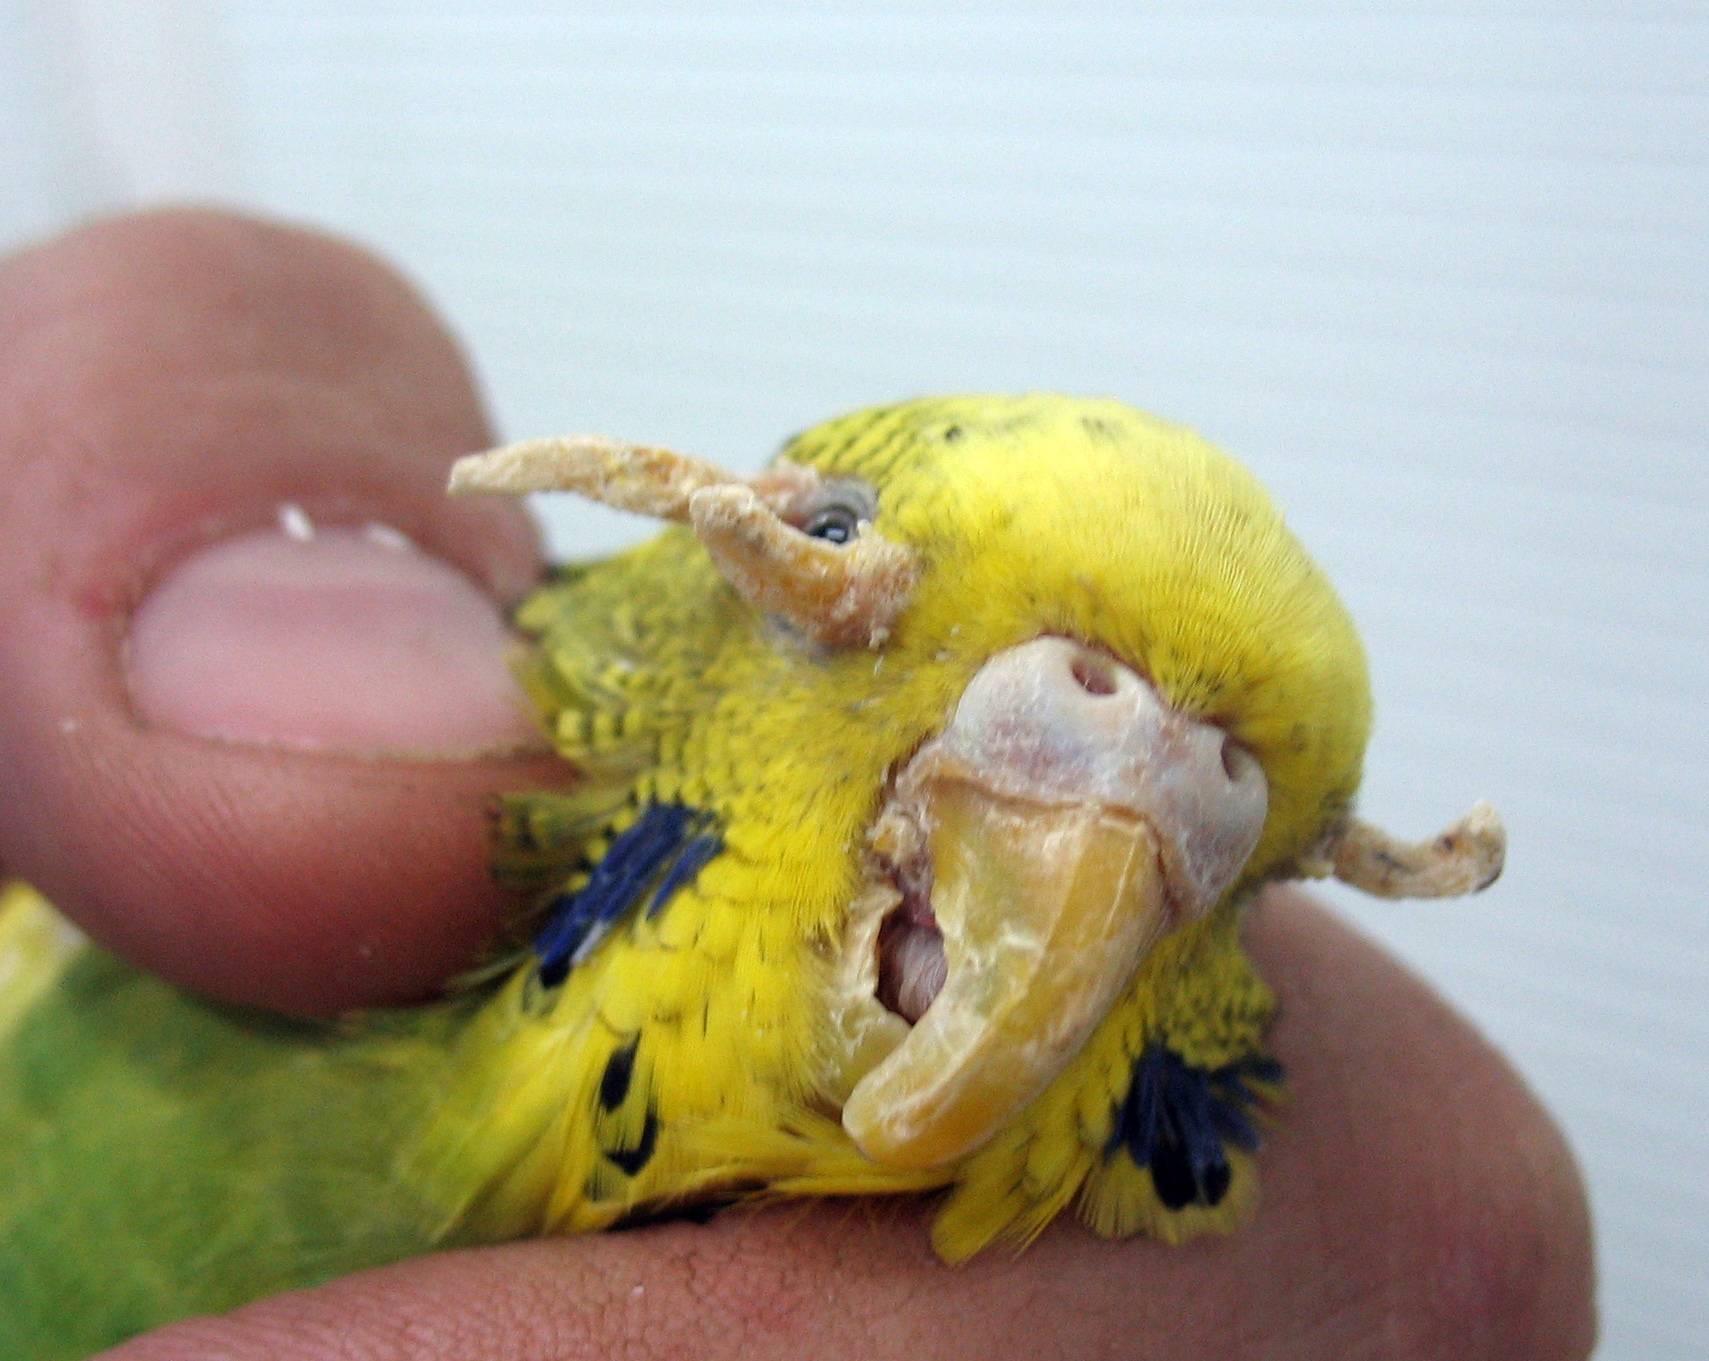 Почему дрожит волнистый попугай: трясется хвост и крылья, закрывает глаза, что делать